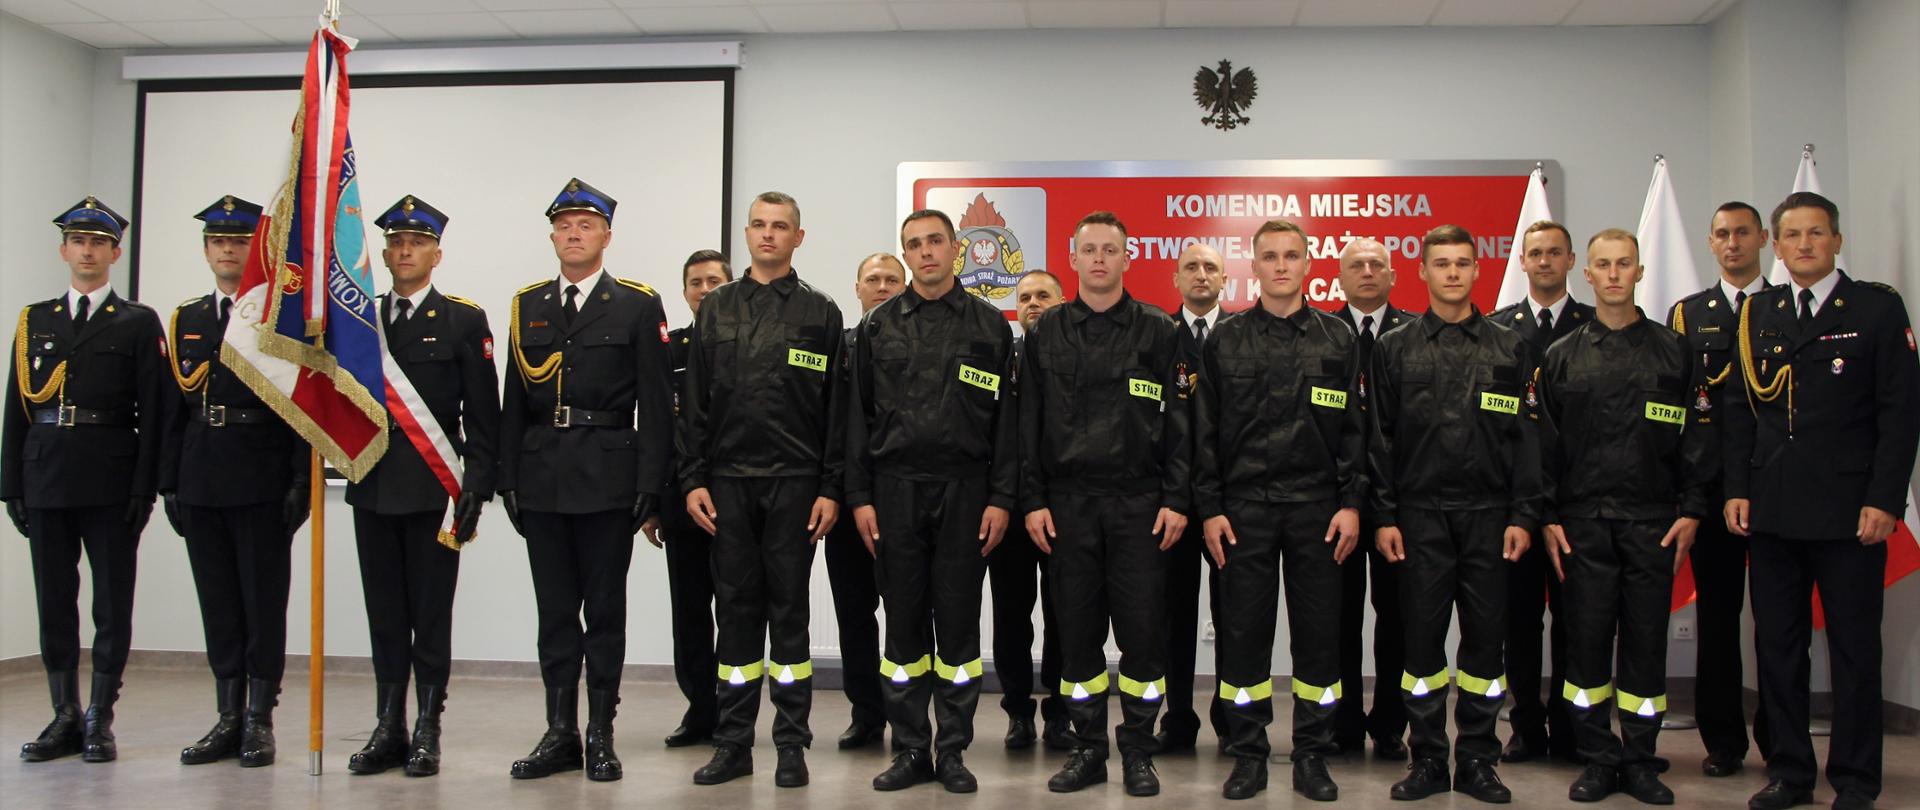 Zdjęcie przedstawia wszystkich uczestników ślubowania. W pierwszym szeregu stoją nowi strażacy, z lewej strony stoi poczet sztandarowy ze sztandarem, a w drugim rzędzie pracownicy Komendy Miejskiej Państwowej Straży Pożarnej w Kielcach wraz z komendantem.